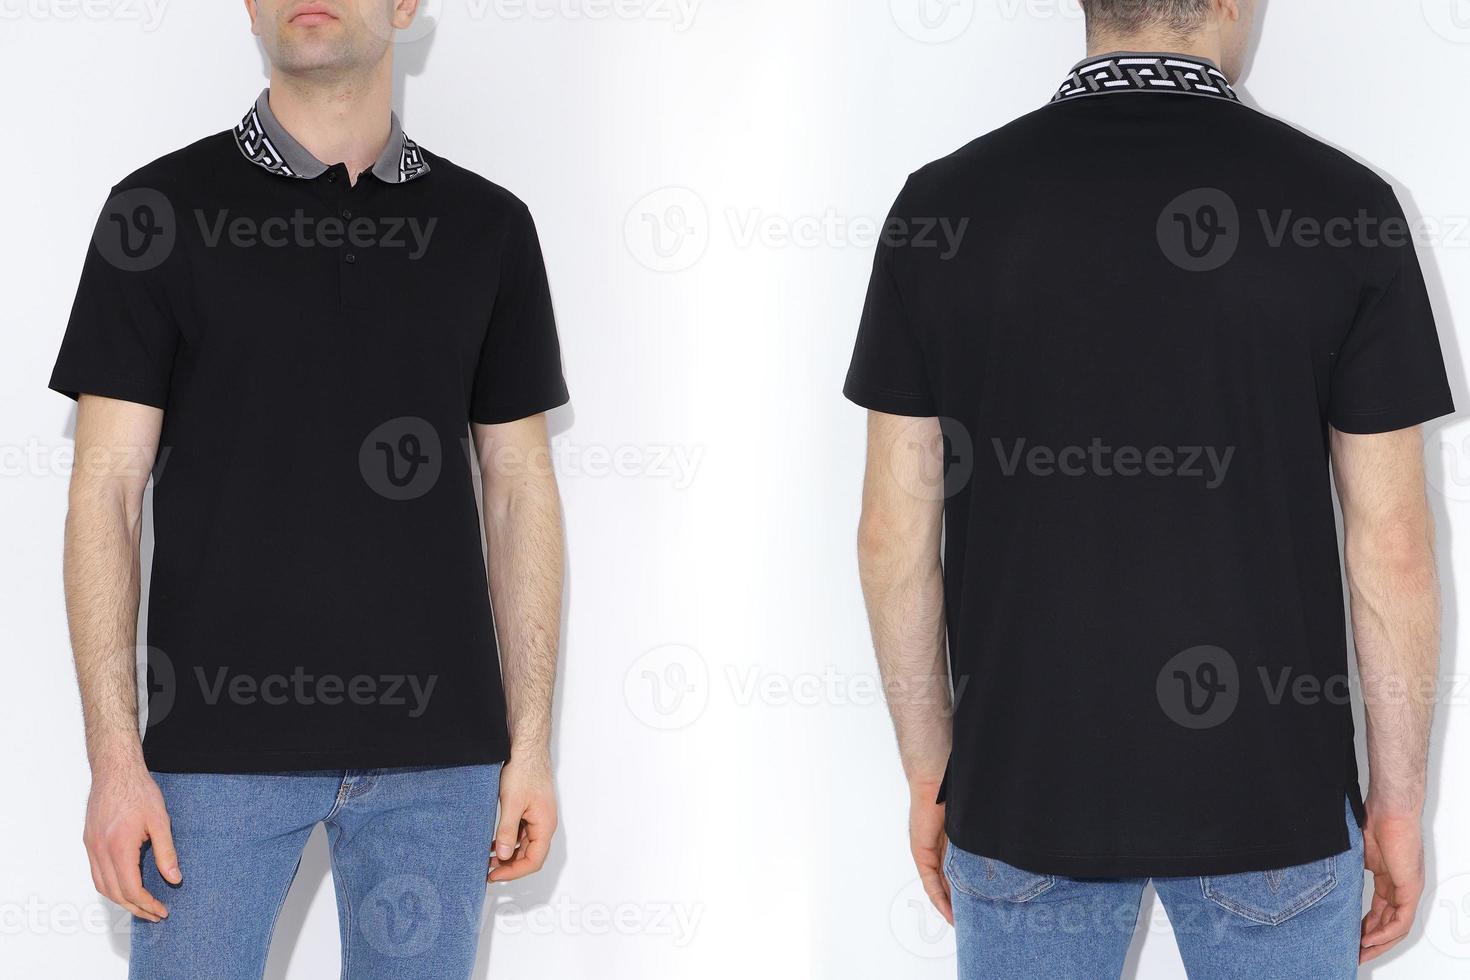 Mannen twee kant t-shirts model. ontwerp sjabloon.mockup foto